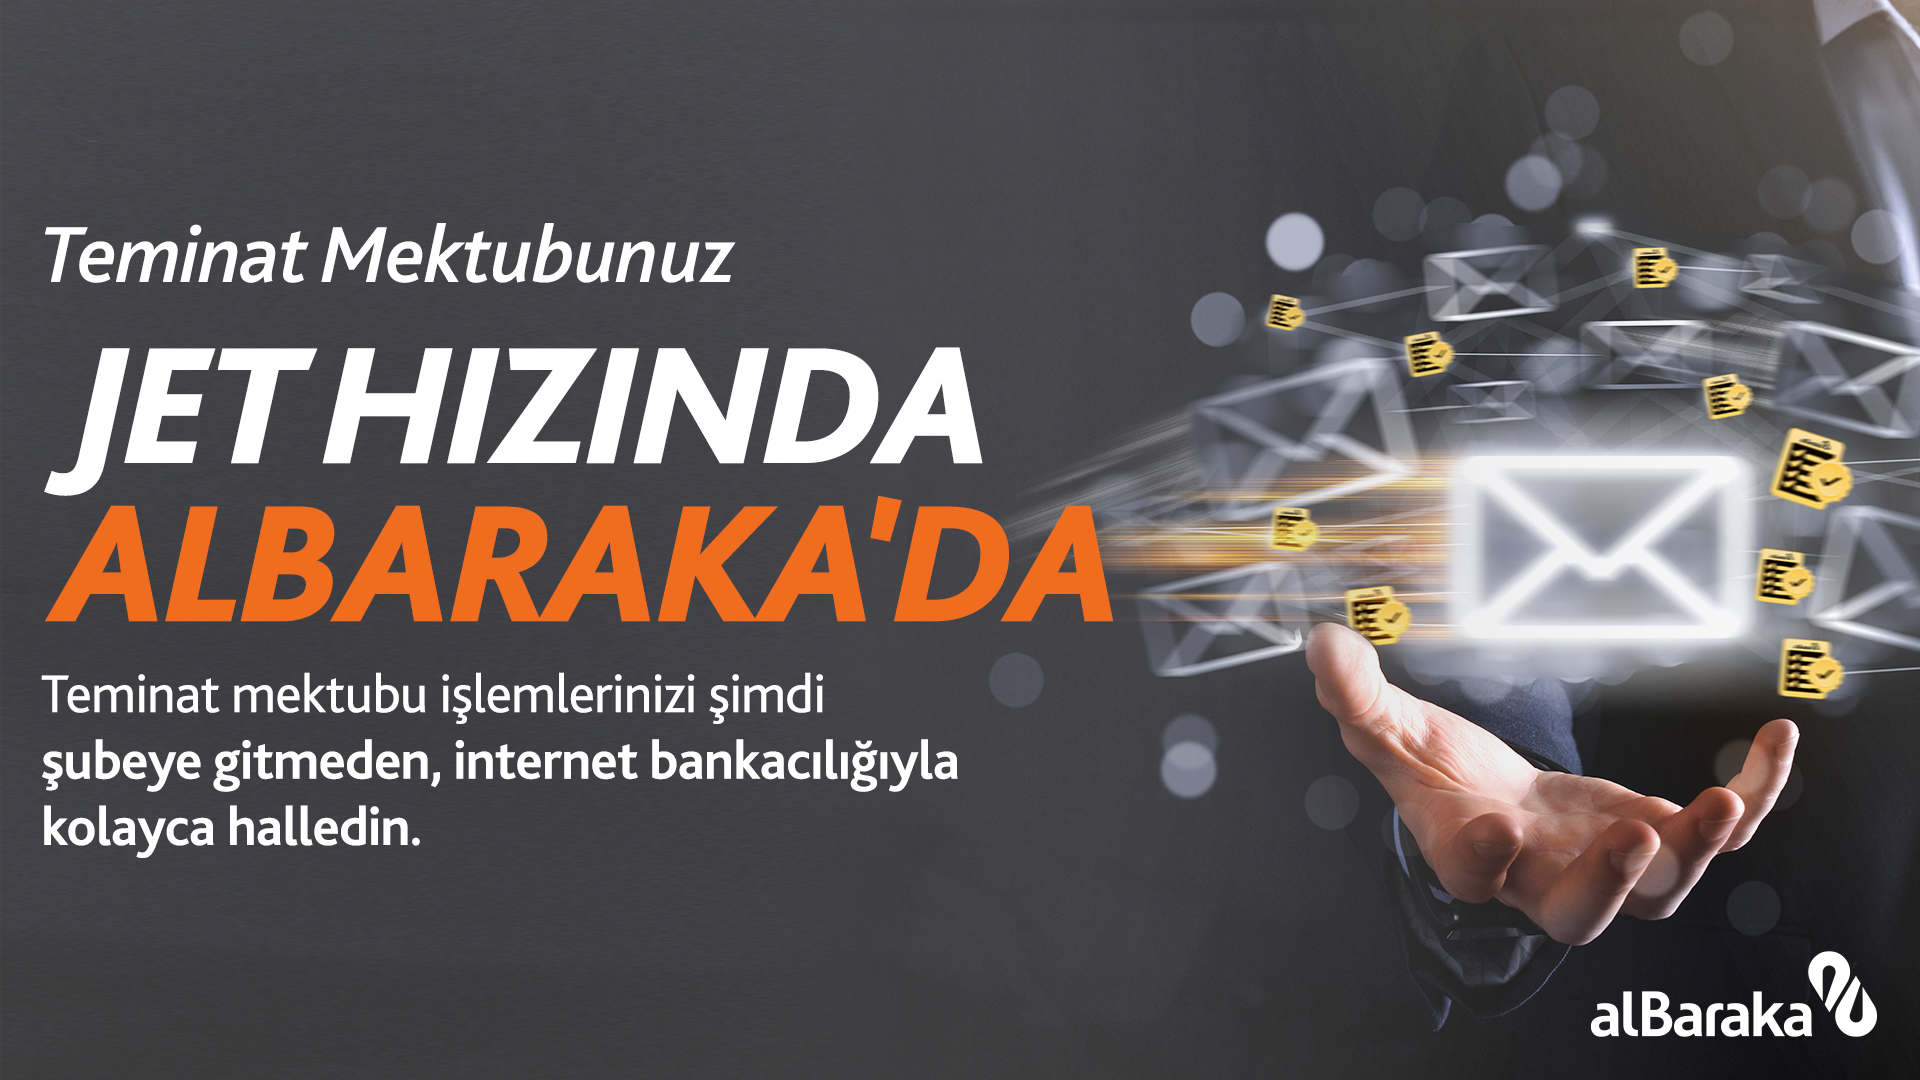 Albaraka Türk, Teminat Mektubu İşlemlerini dijitale taşıdı